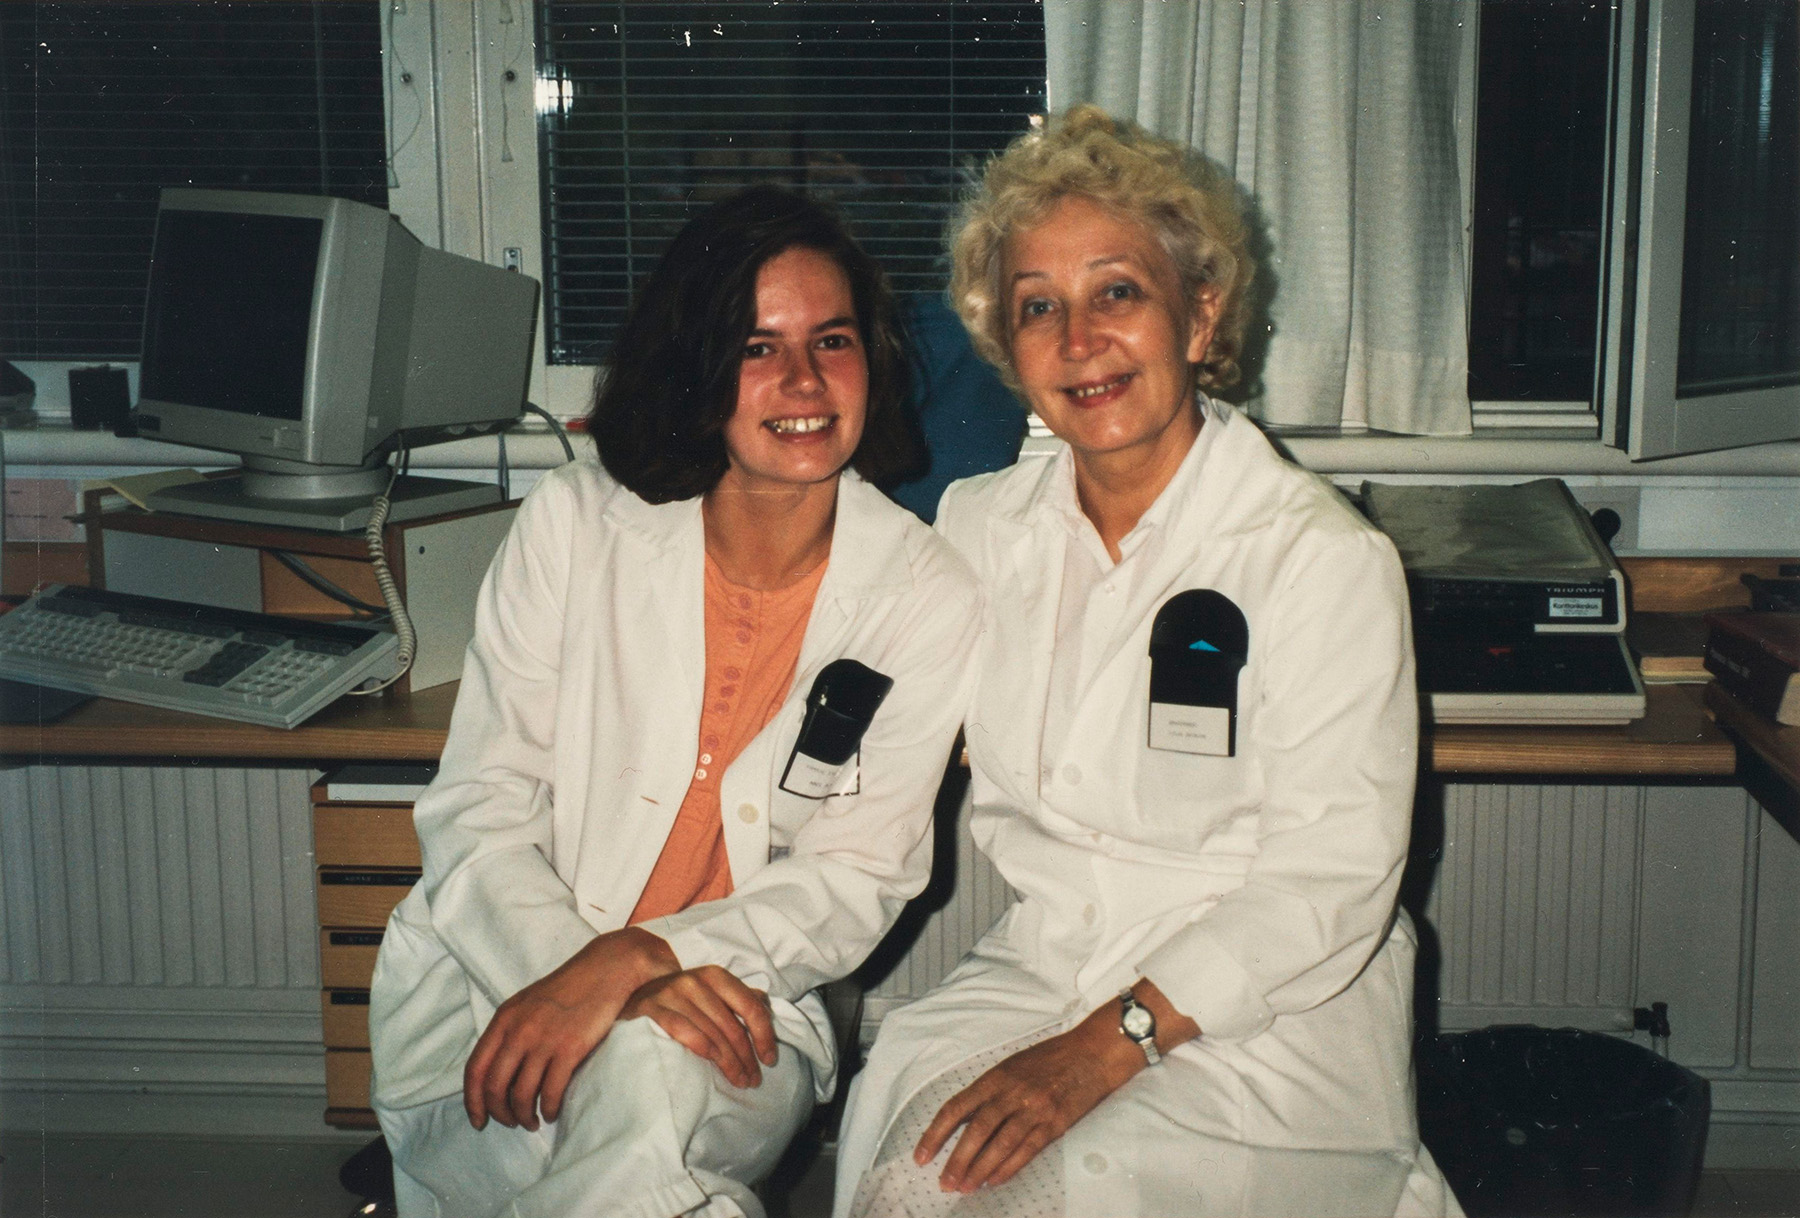 Lilja Tatti kollegansa kanssa Kuopion yliopistollisen sairaalan ihotautiosastolla vuonna 1991. SKS KIA, Tatti-perheen arkisto. CC BY 4.0